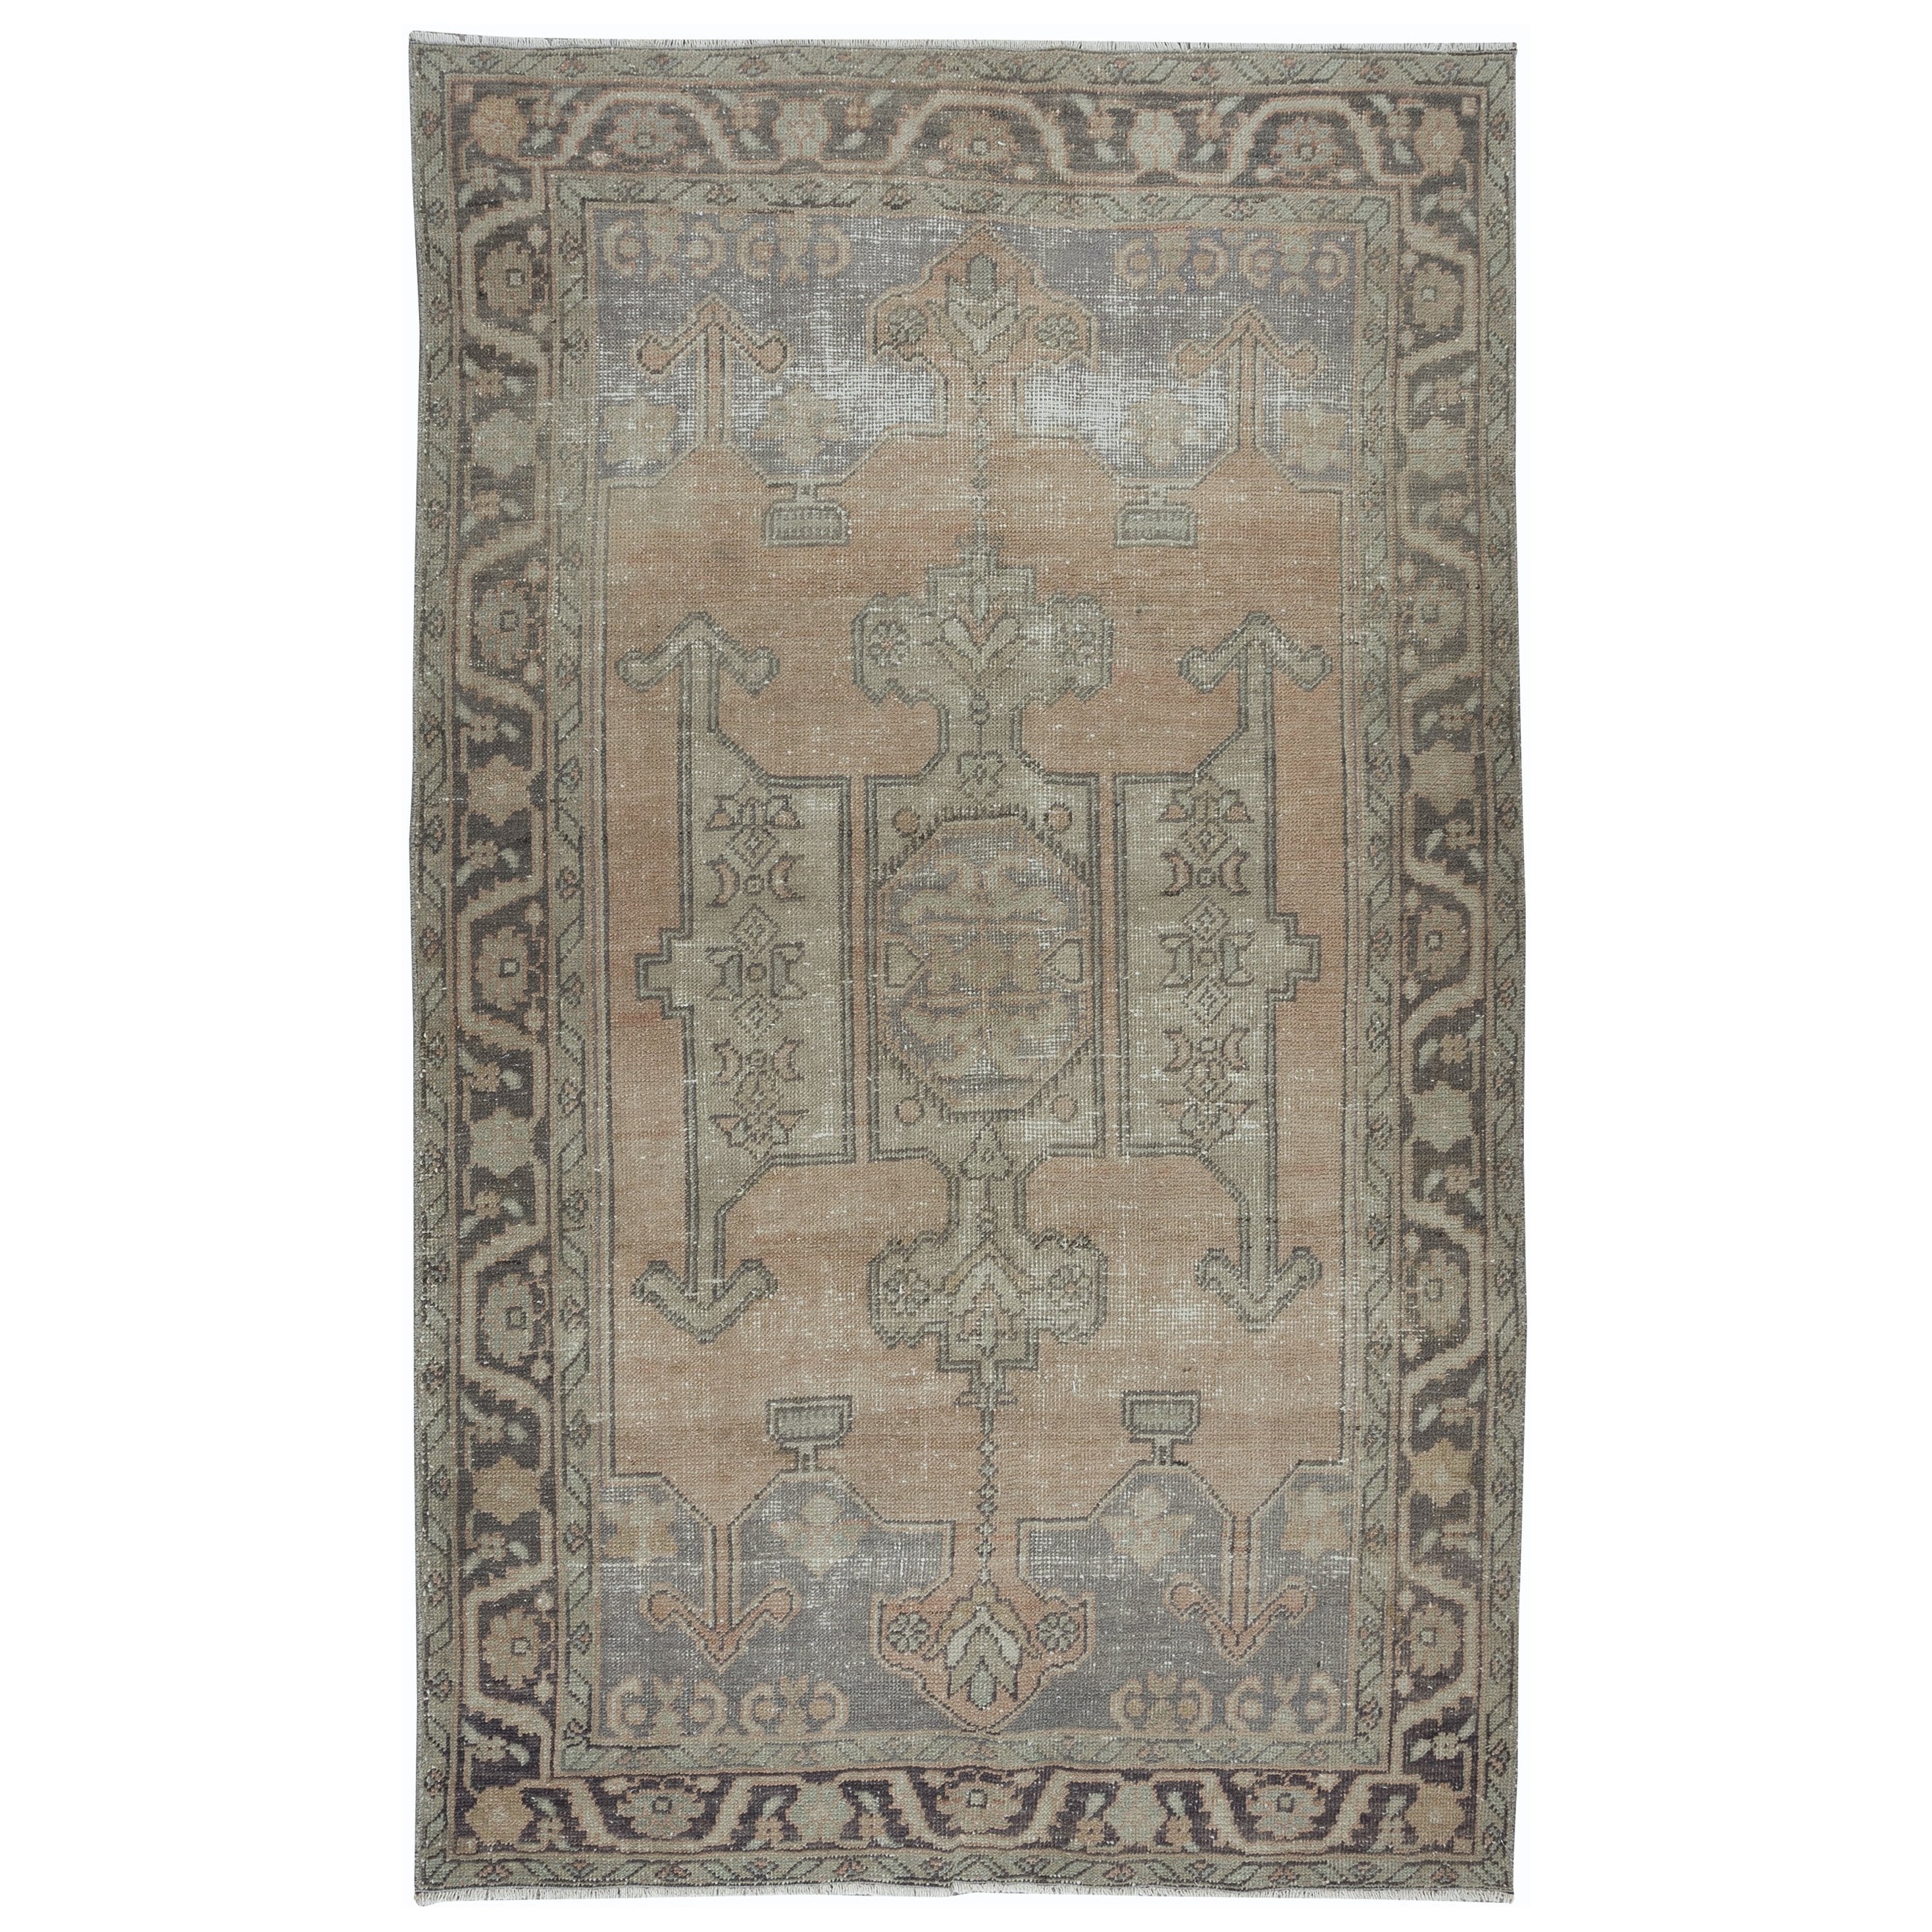 5x8.3 Ft Vintage Handmade Rug in Muted Colors, Anatolian Geometric Wool Carpet (Tapis de laine géométrique anatolien)